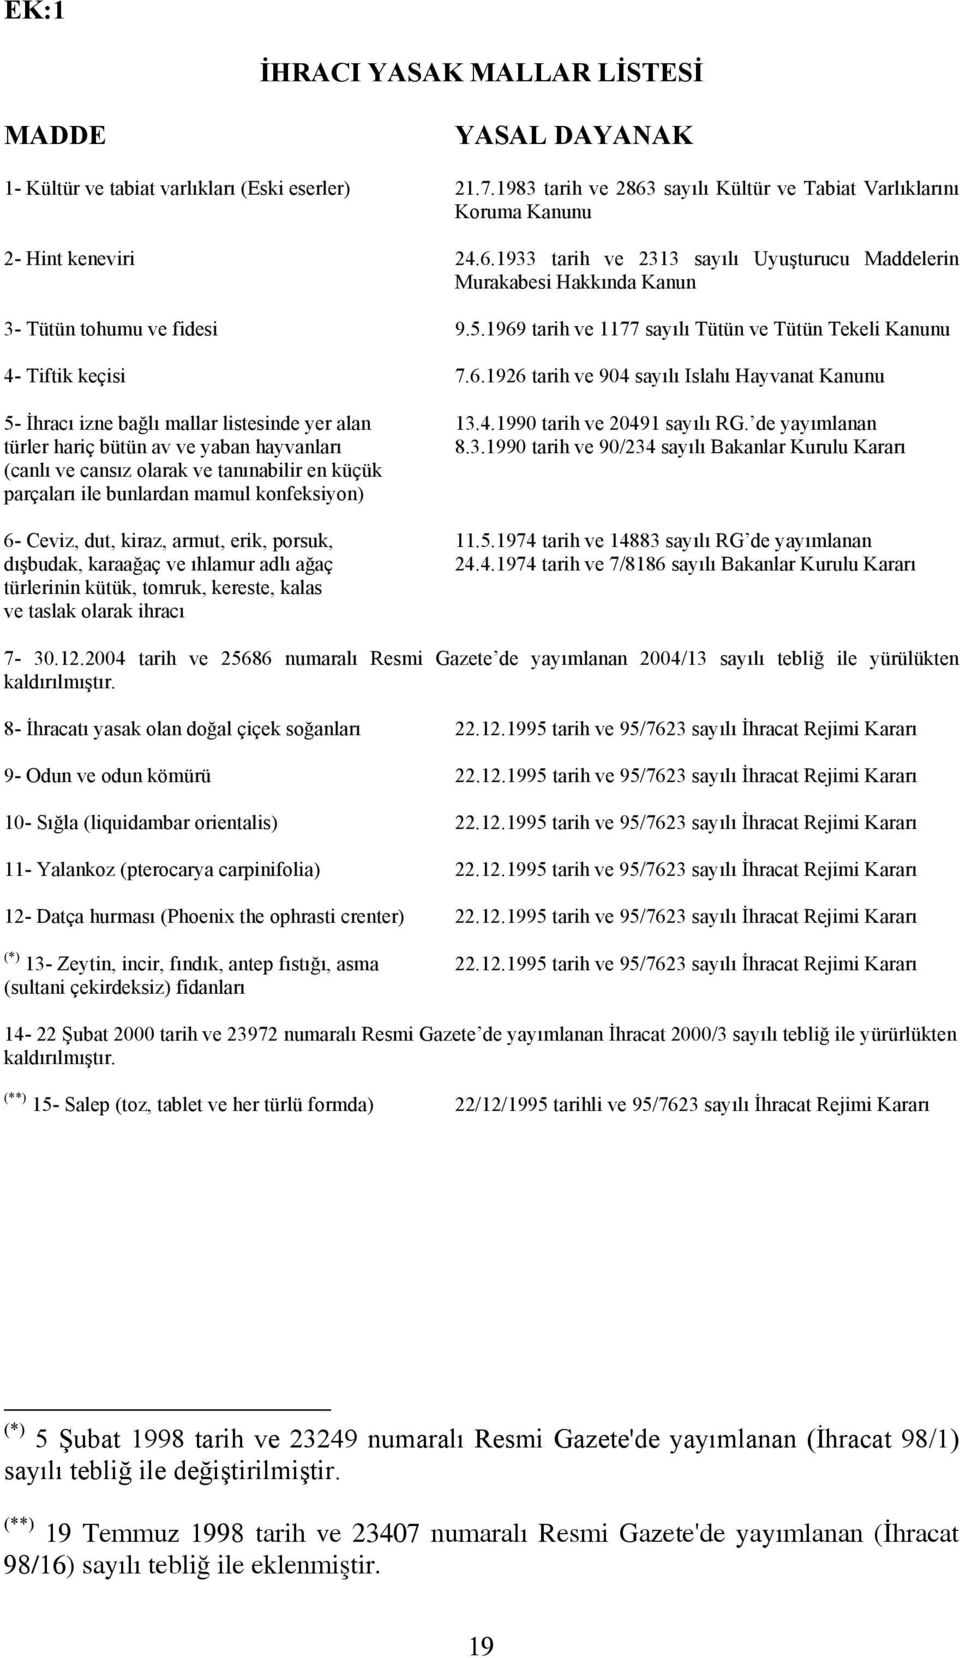 1969 tarih ve 1177 sayılı Tütün ve Tütün Tekeli Kanunu 4- Tiftik keçisi 7.6.1926 tarih ve 904 sayılı Islahı Hayvanat Kanunu 5- İhracı izne bağlı mallar listesinde yer alan 13.4.1990 tarih ve 20491 sayılı RG.